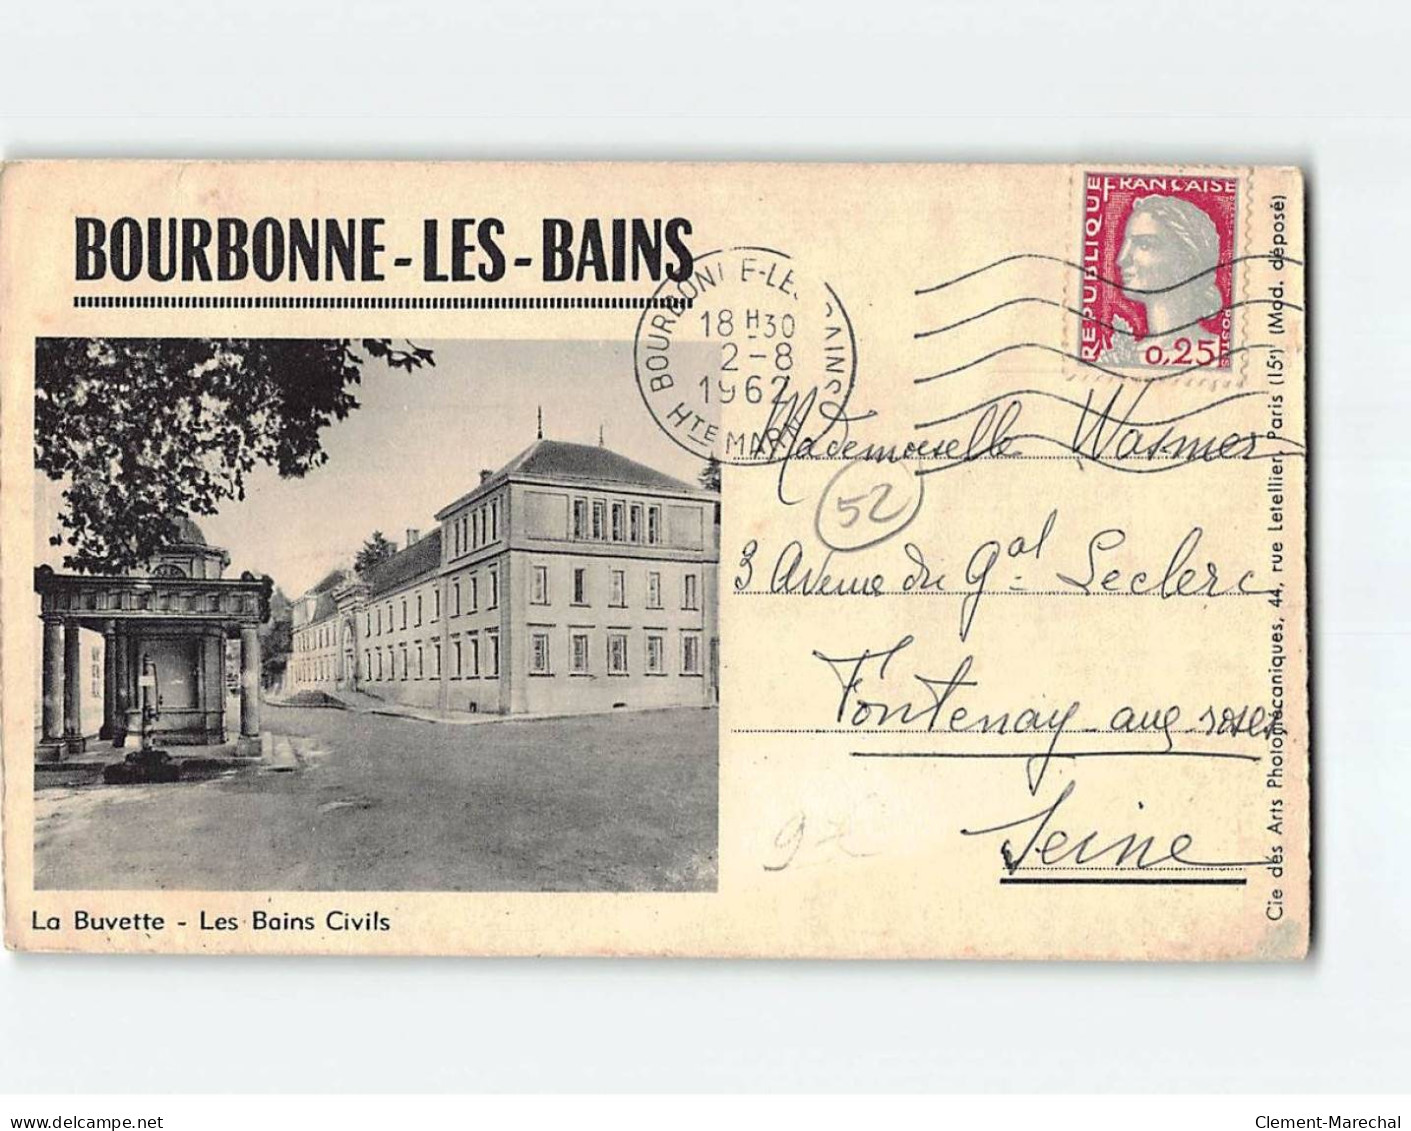 BOURBONNE LES BAINS : Les Colonnes Romaines, Le Donjon Du Château, La Buvette, Les Bains Civils - état - Bourbonne Les Bains